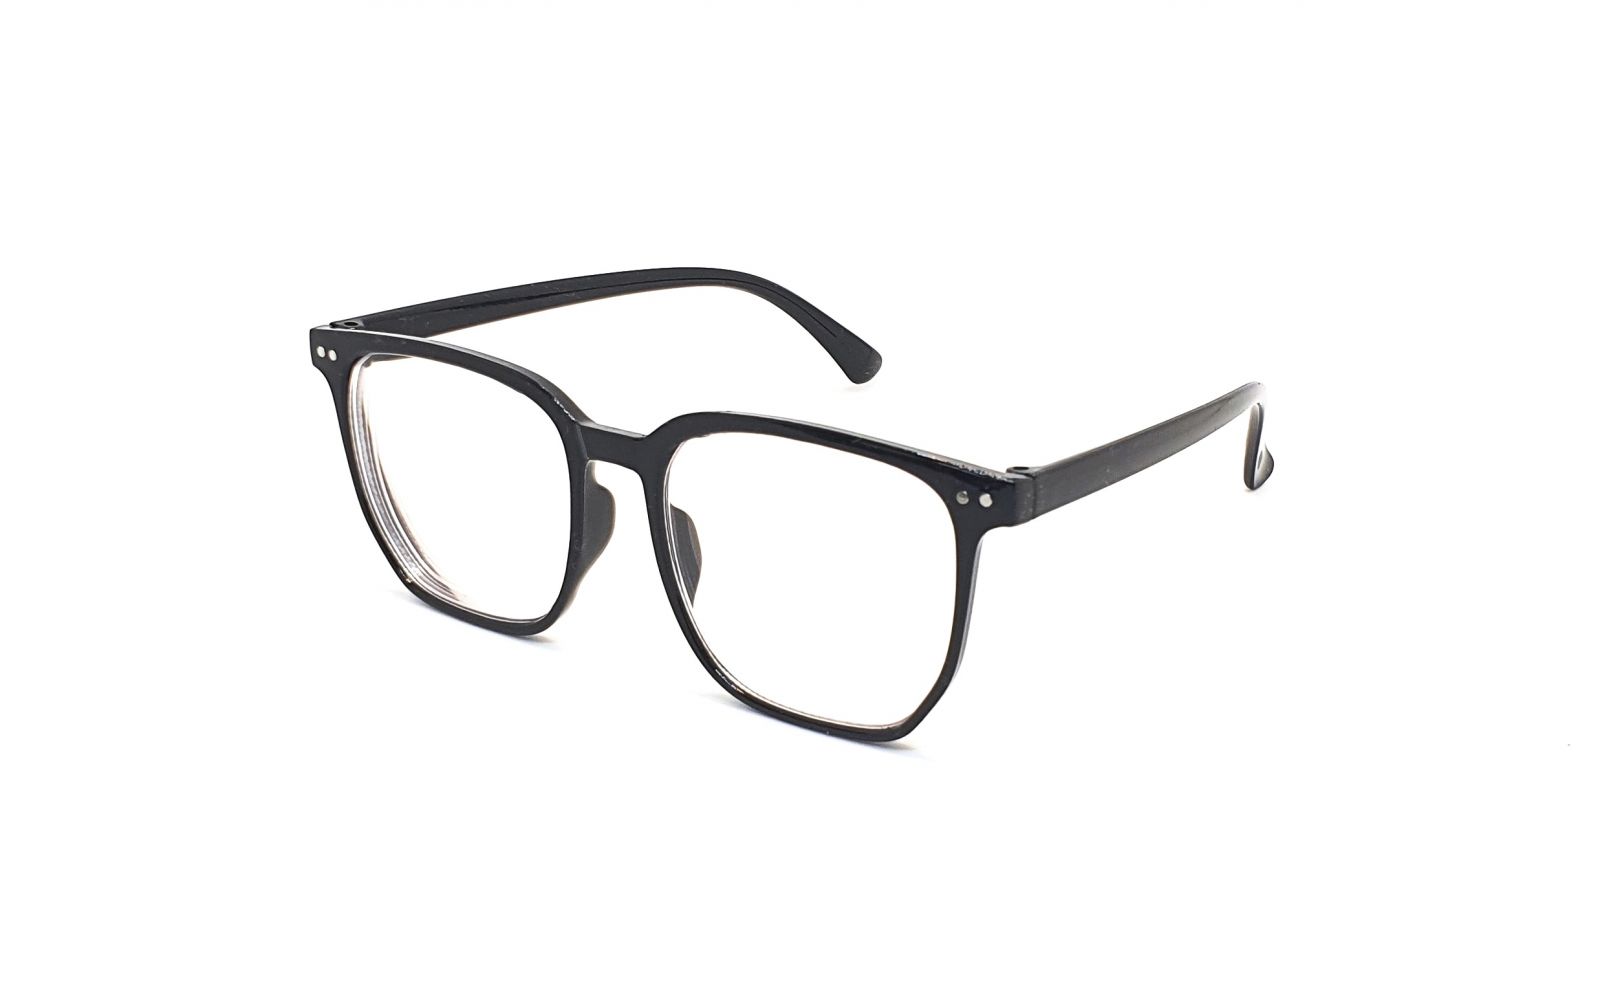 Samozabarvovací dioptrické brýle F24 / -3,00 black